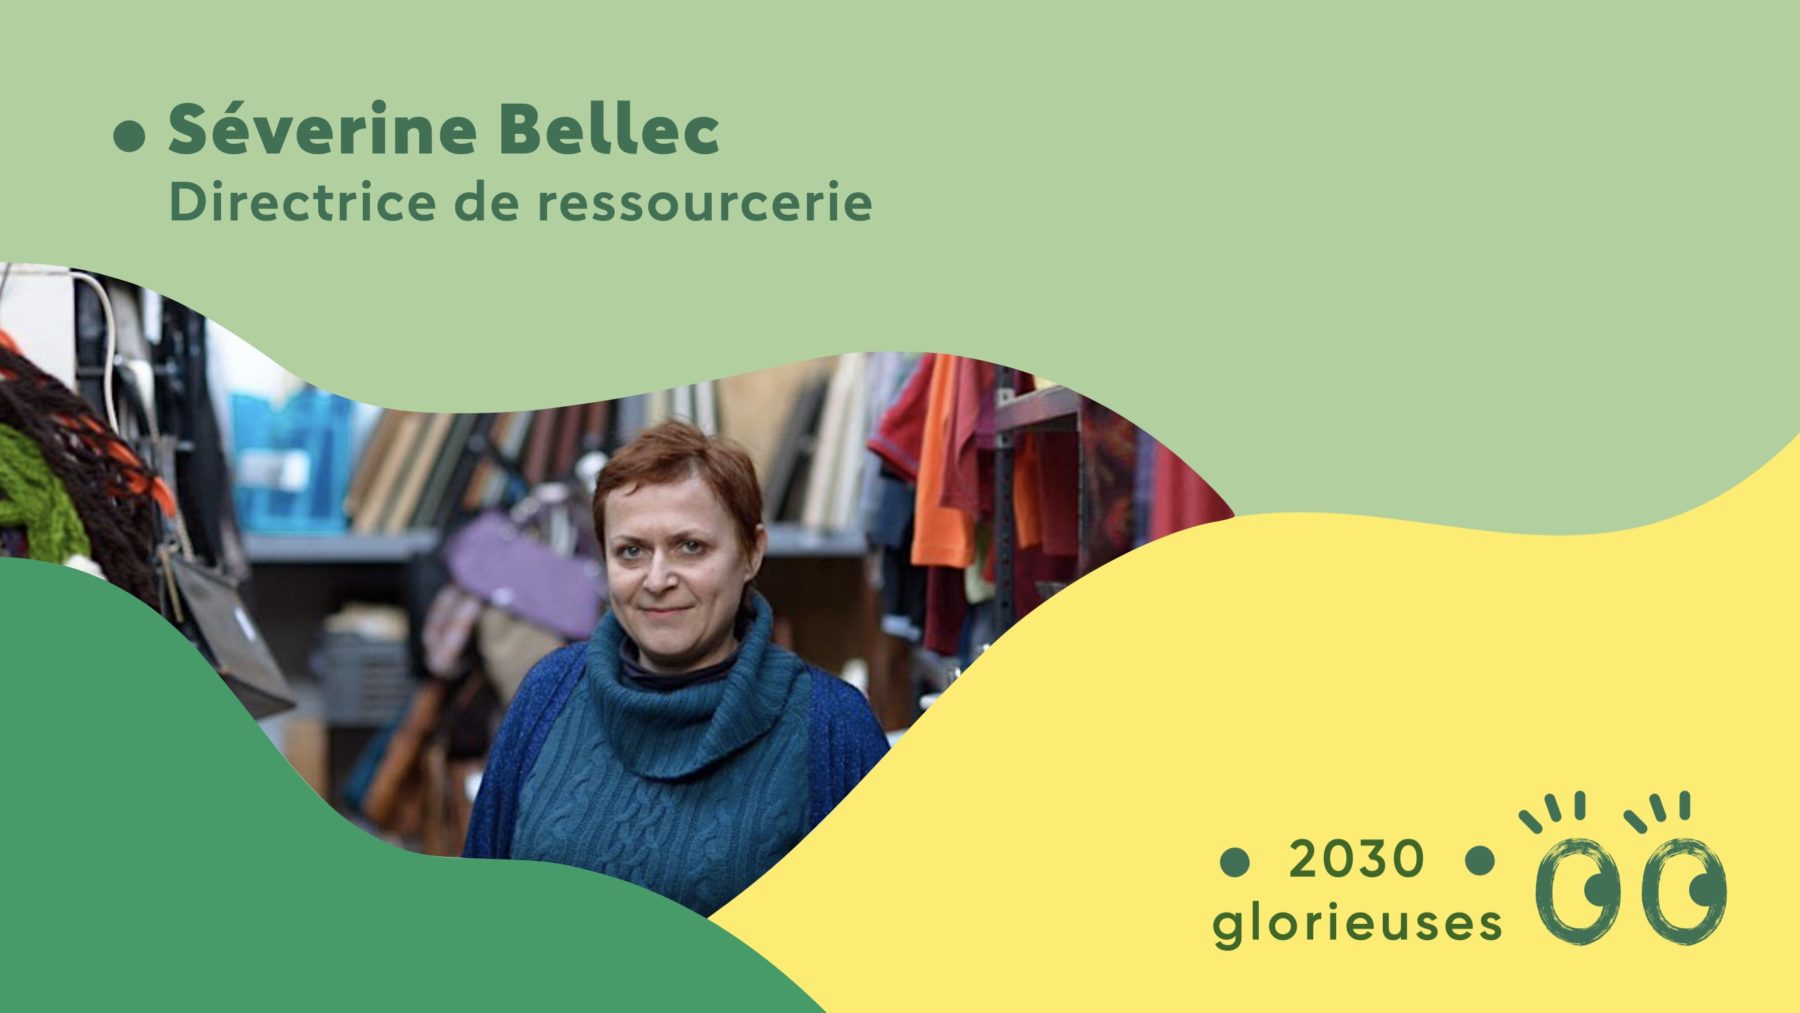 2030 Glorieuses #33 : Séverine Bellec : “Bientôt les gens iront d'abord dans une ressourcerie plutôt que d'acheter neuf"